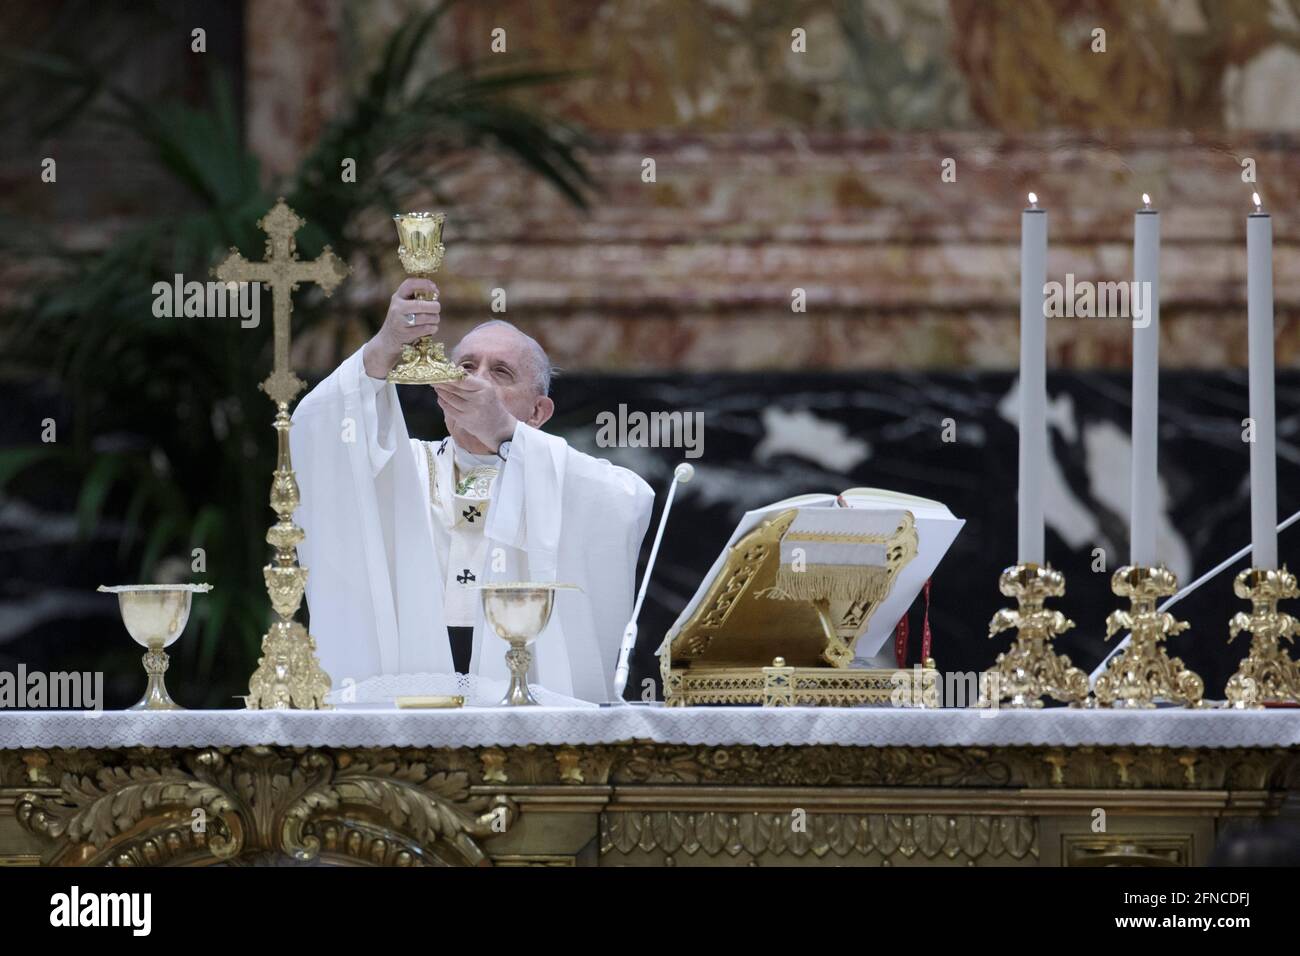 Rom. Vatikan, 16. Mai 2021: Papst Franziskus feiert in der Petersbasilika eine Messe für die in Rom lebenden Gläubigen Myanmars. Vatikan, 16. Mai 2021 Quelle: dpa picture Alliance/Alamy Live News Stockfoto